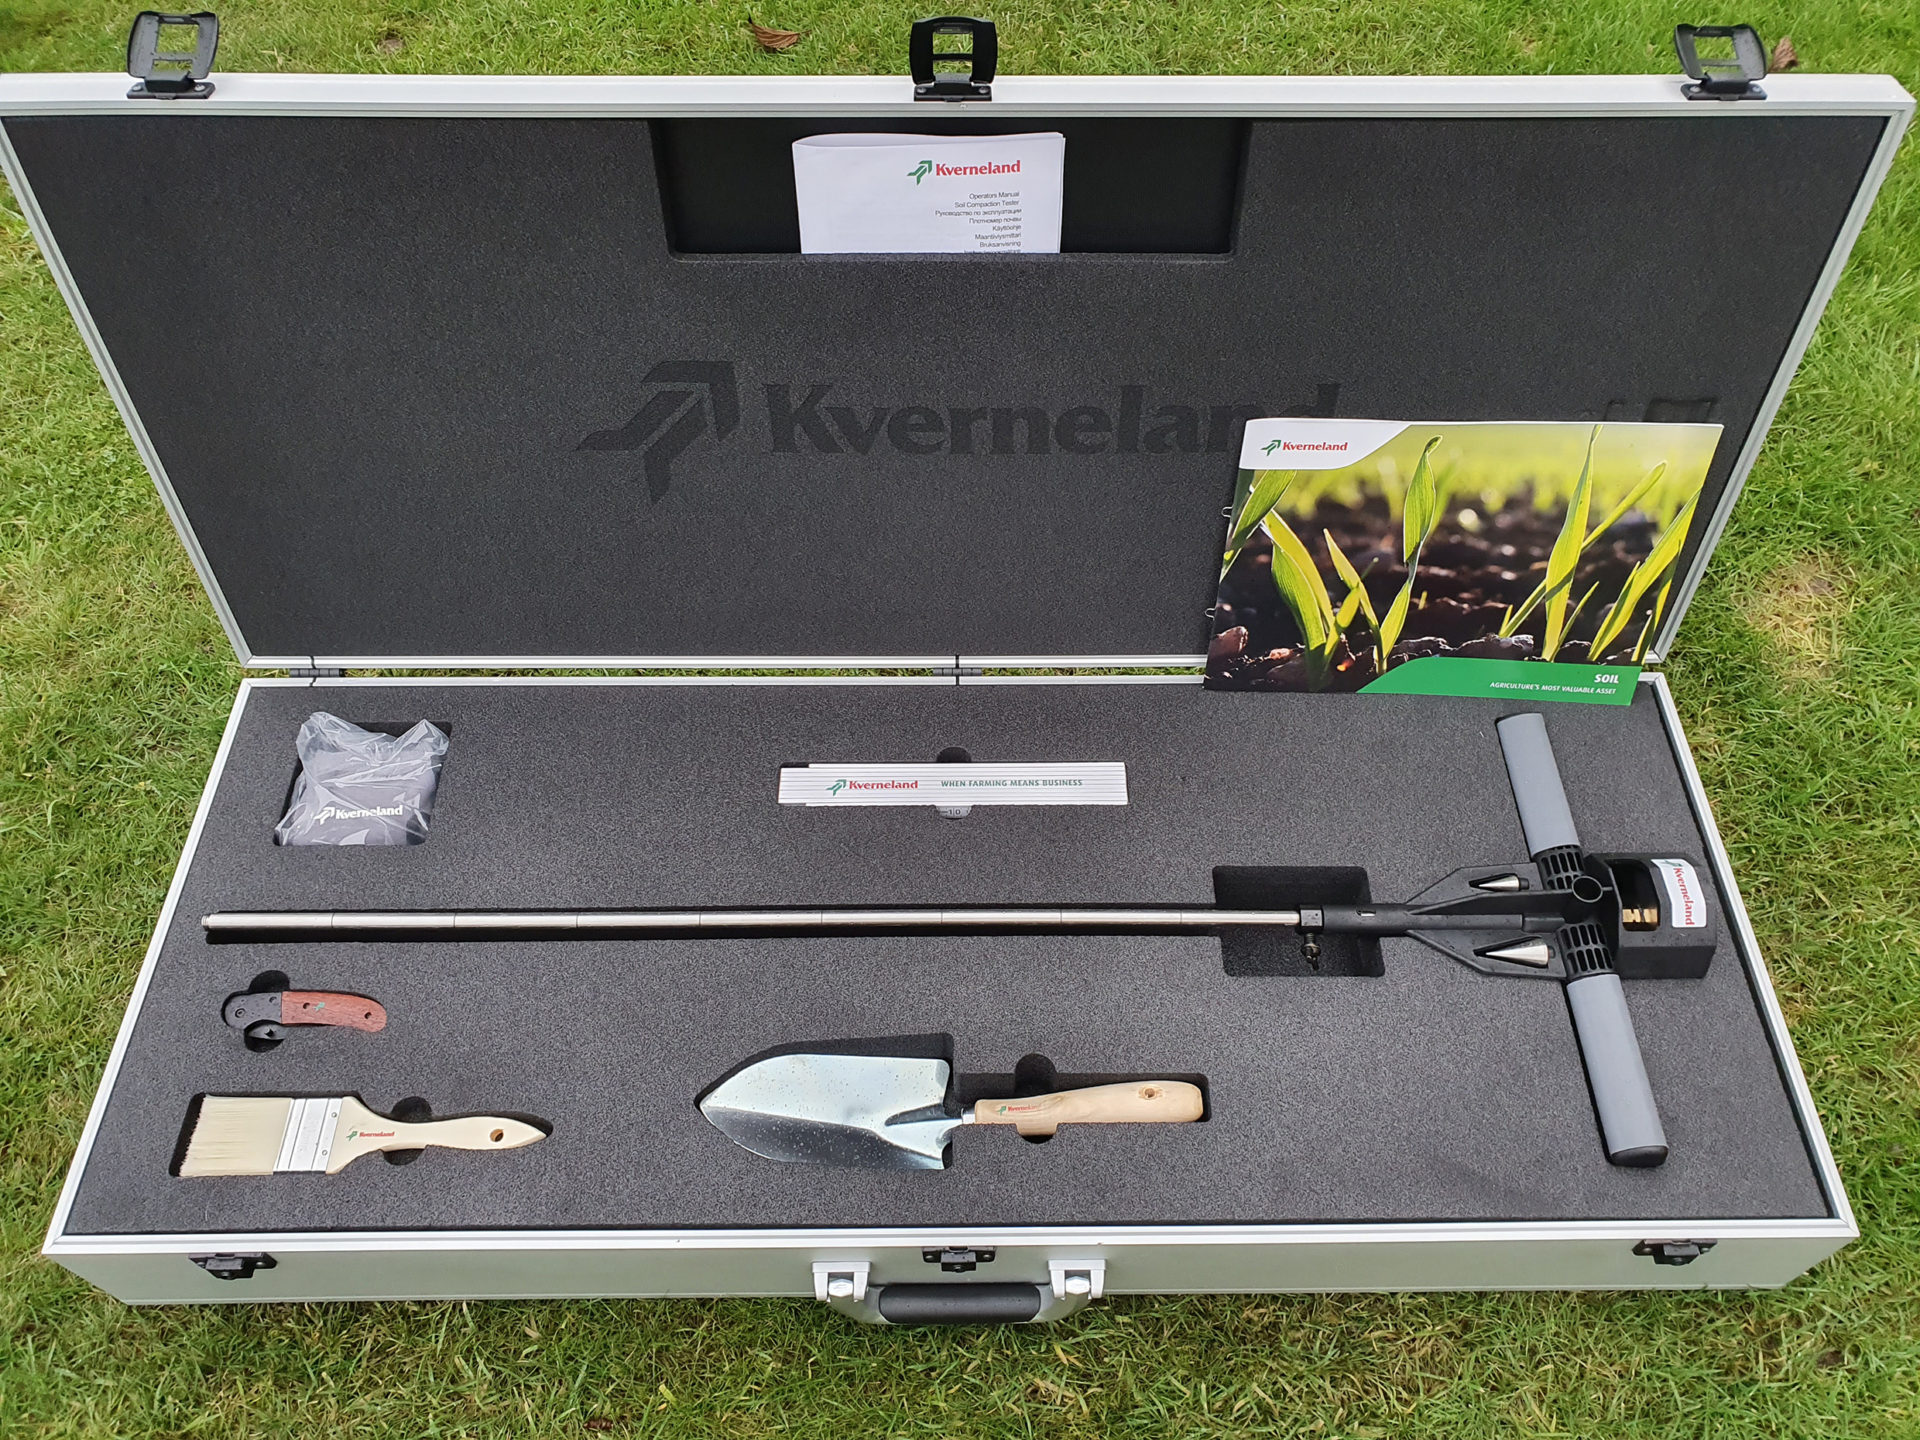 Kverneland offers soil testing kit